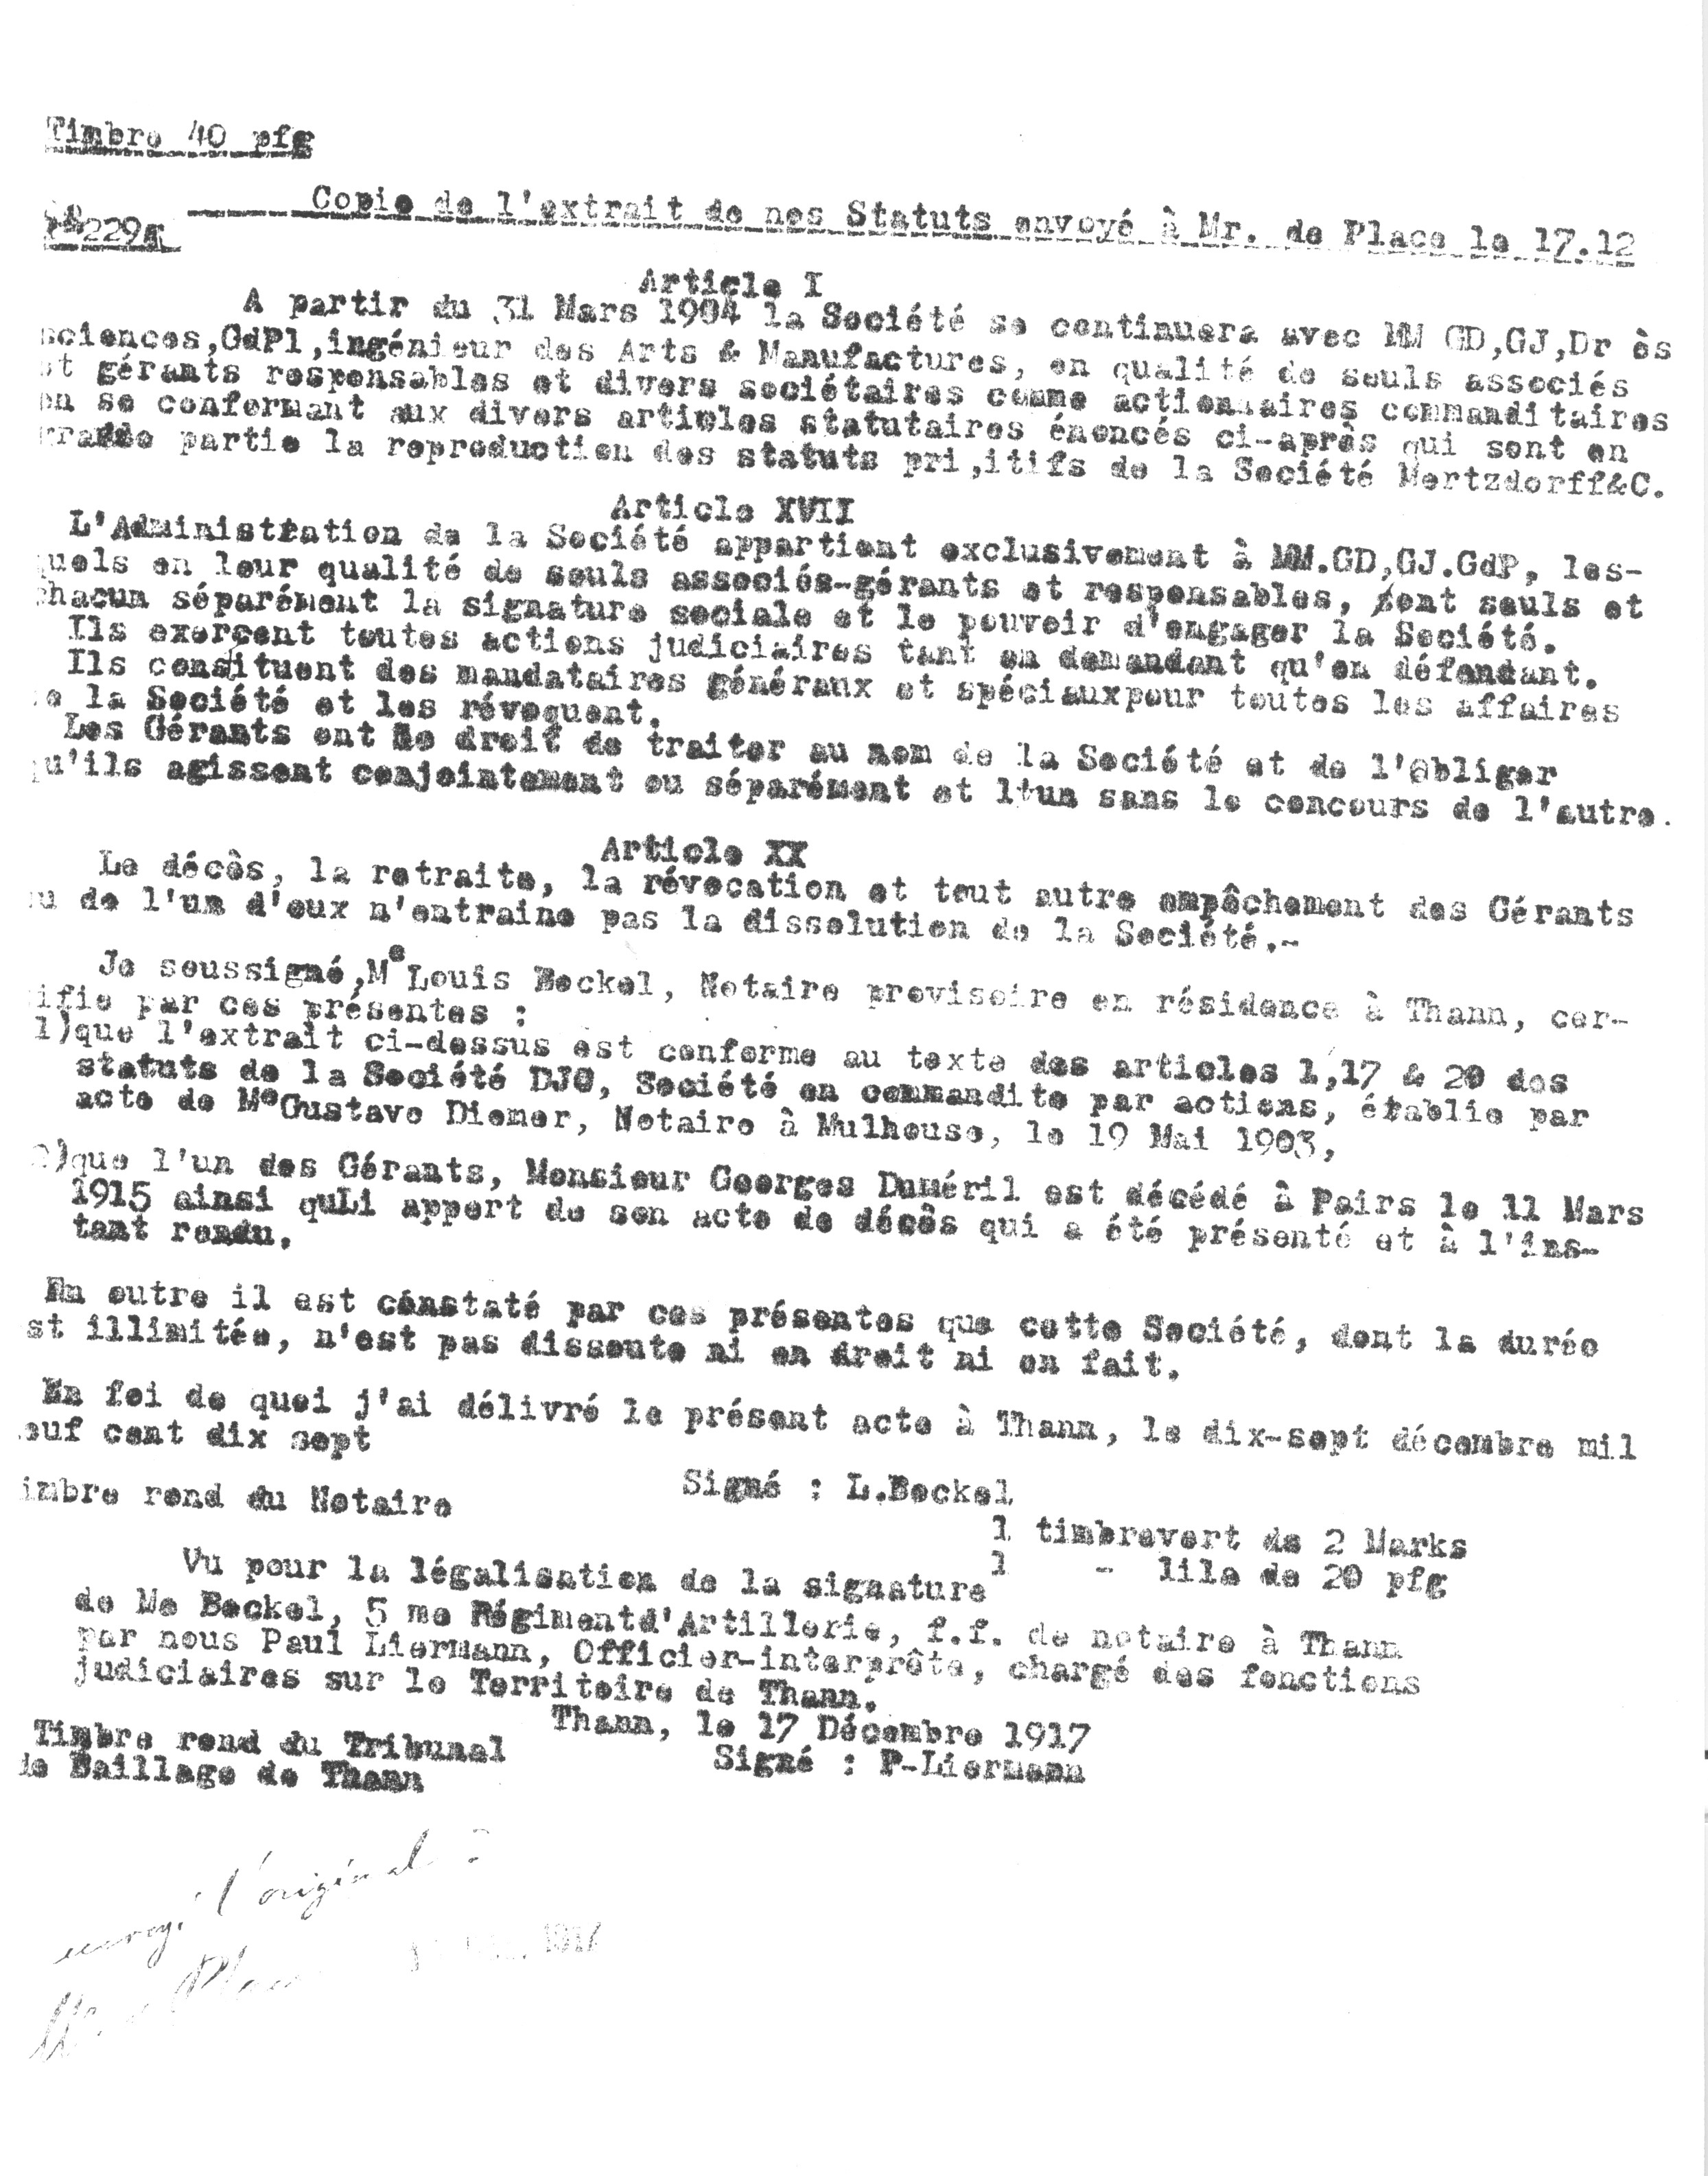 1917 – Copie de l’extrait des Statuts de la Société DJC (17 décembre 1917)